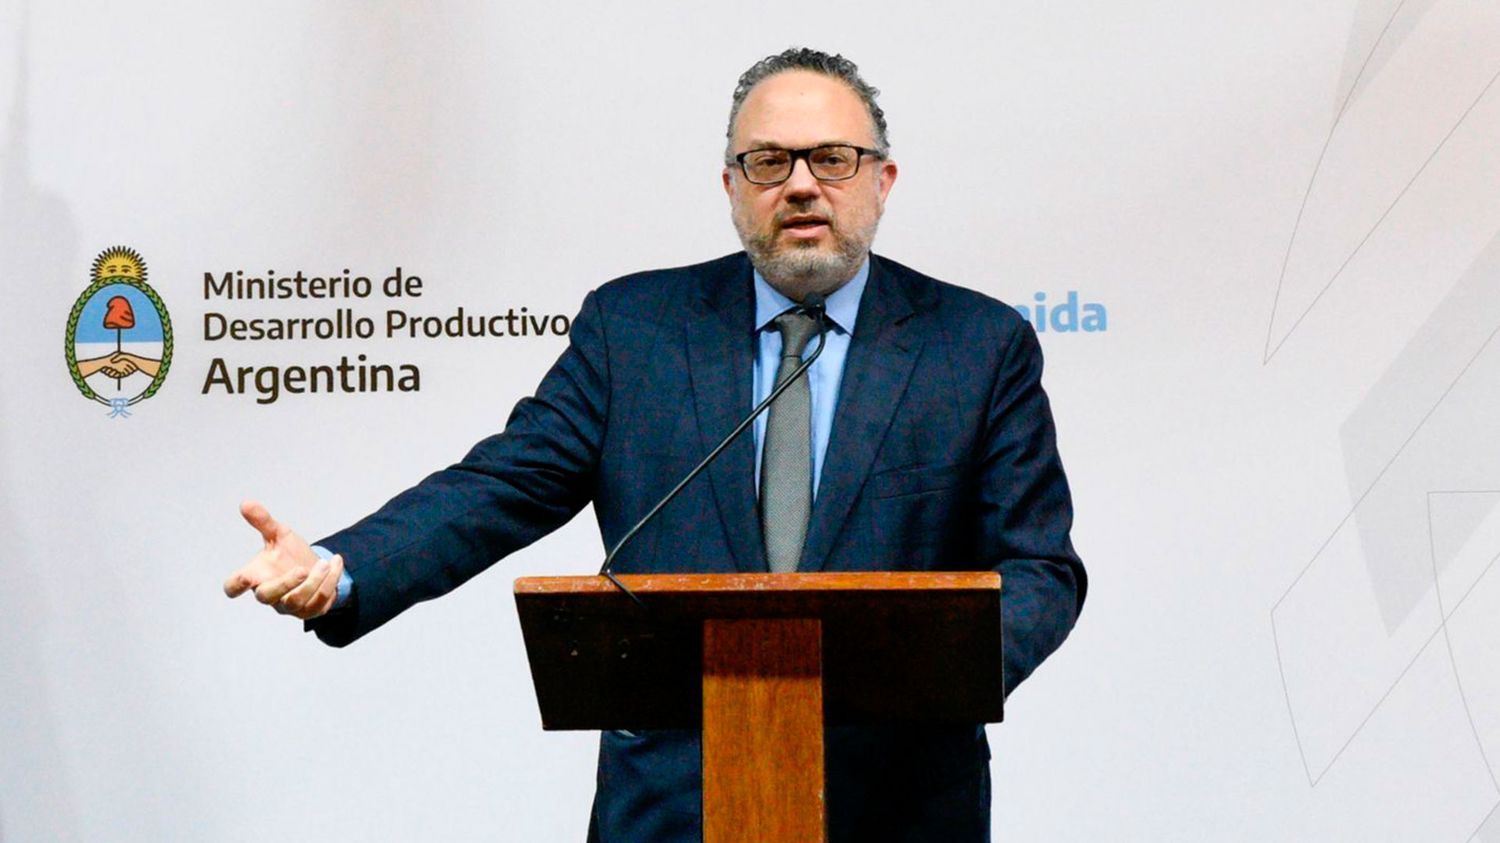 Feroz interna: Alberto Fernández echó al Ministro Kulfas tras acusación de Cristina